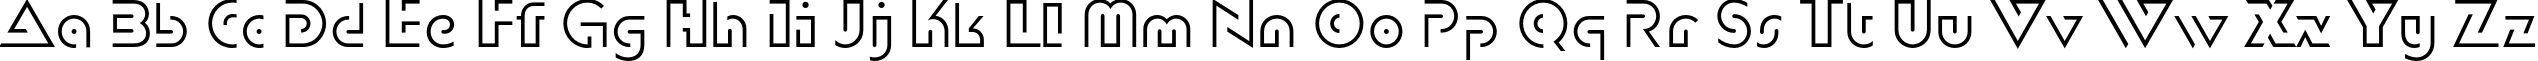 Пример написания английского алфавита шрифтом DublonLight